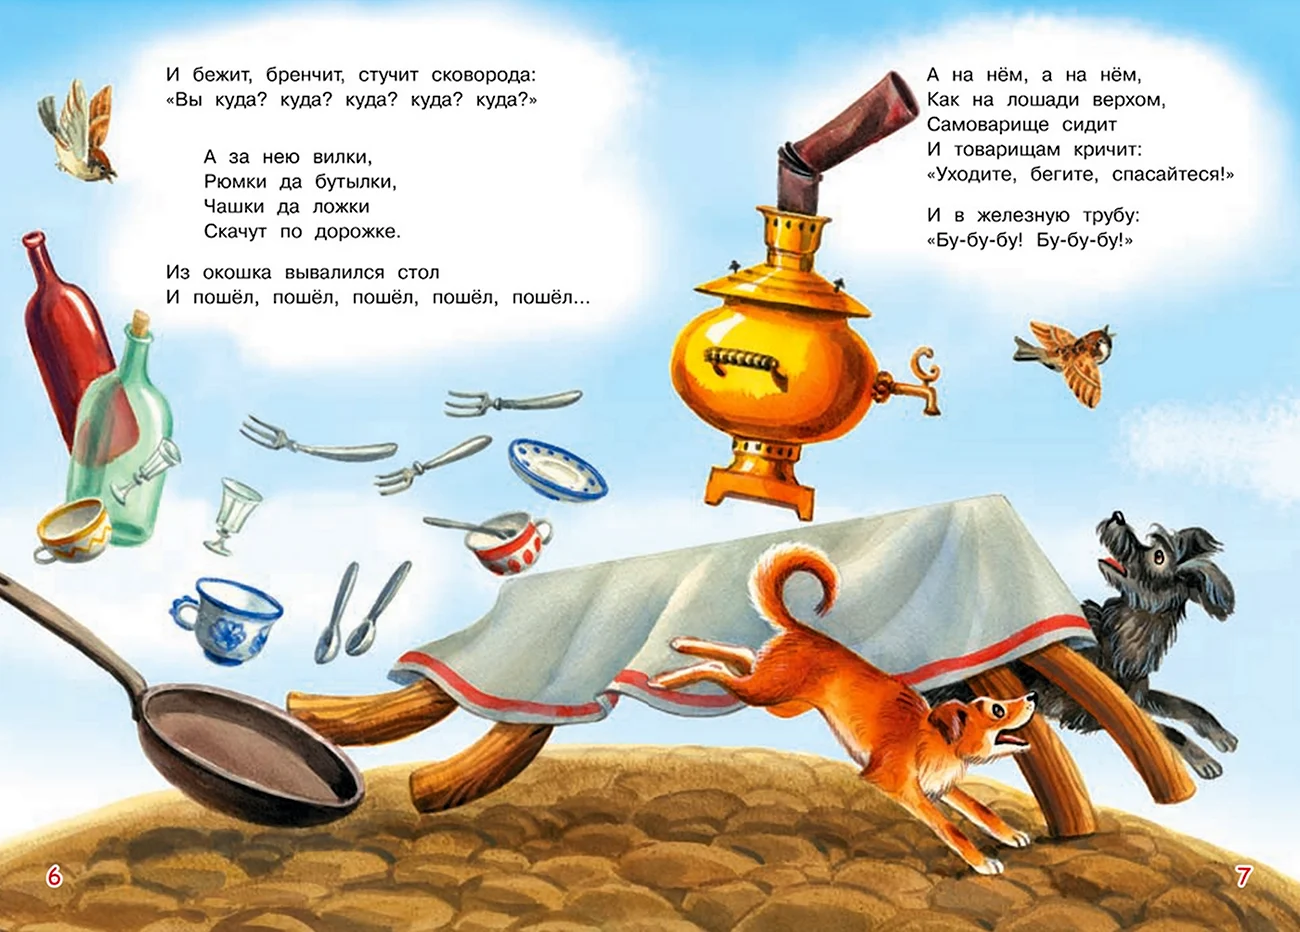 Иллюстрации к стихам Чуковского Федорино горе. Картинка